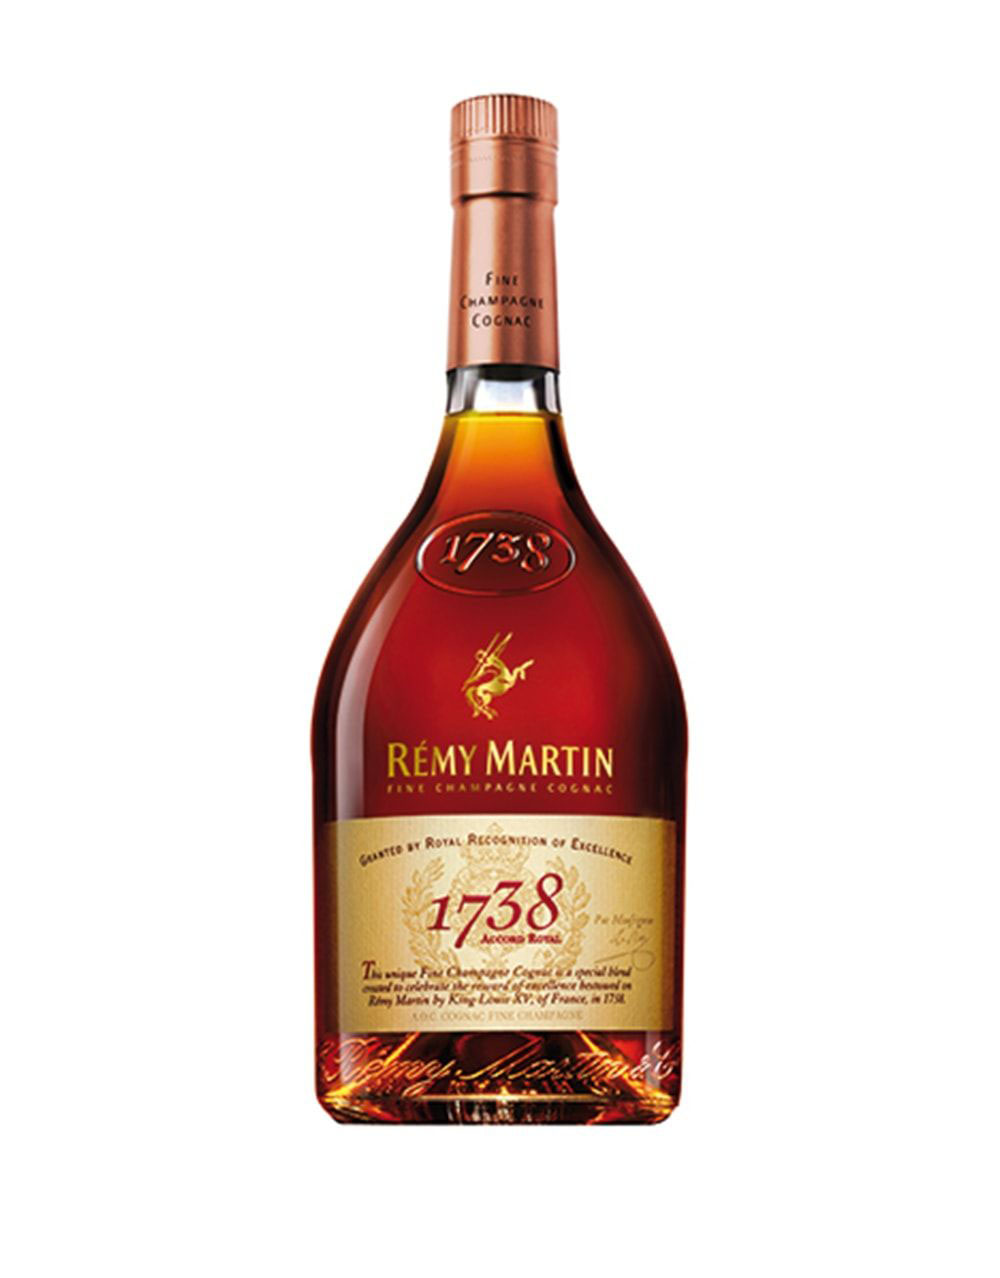 Remy Martin 1738 Accord Royal Cognac 1L